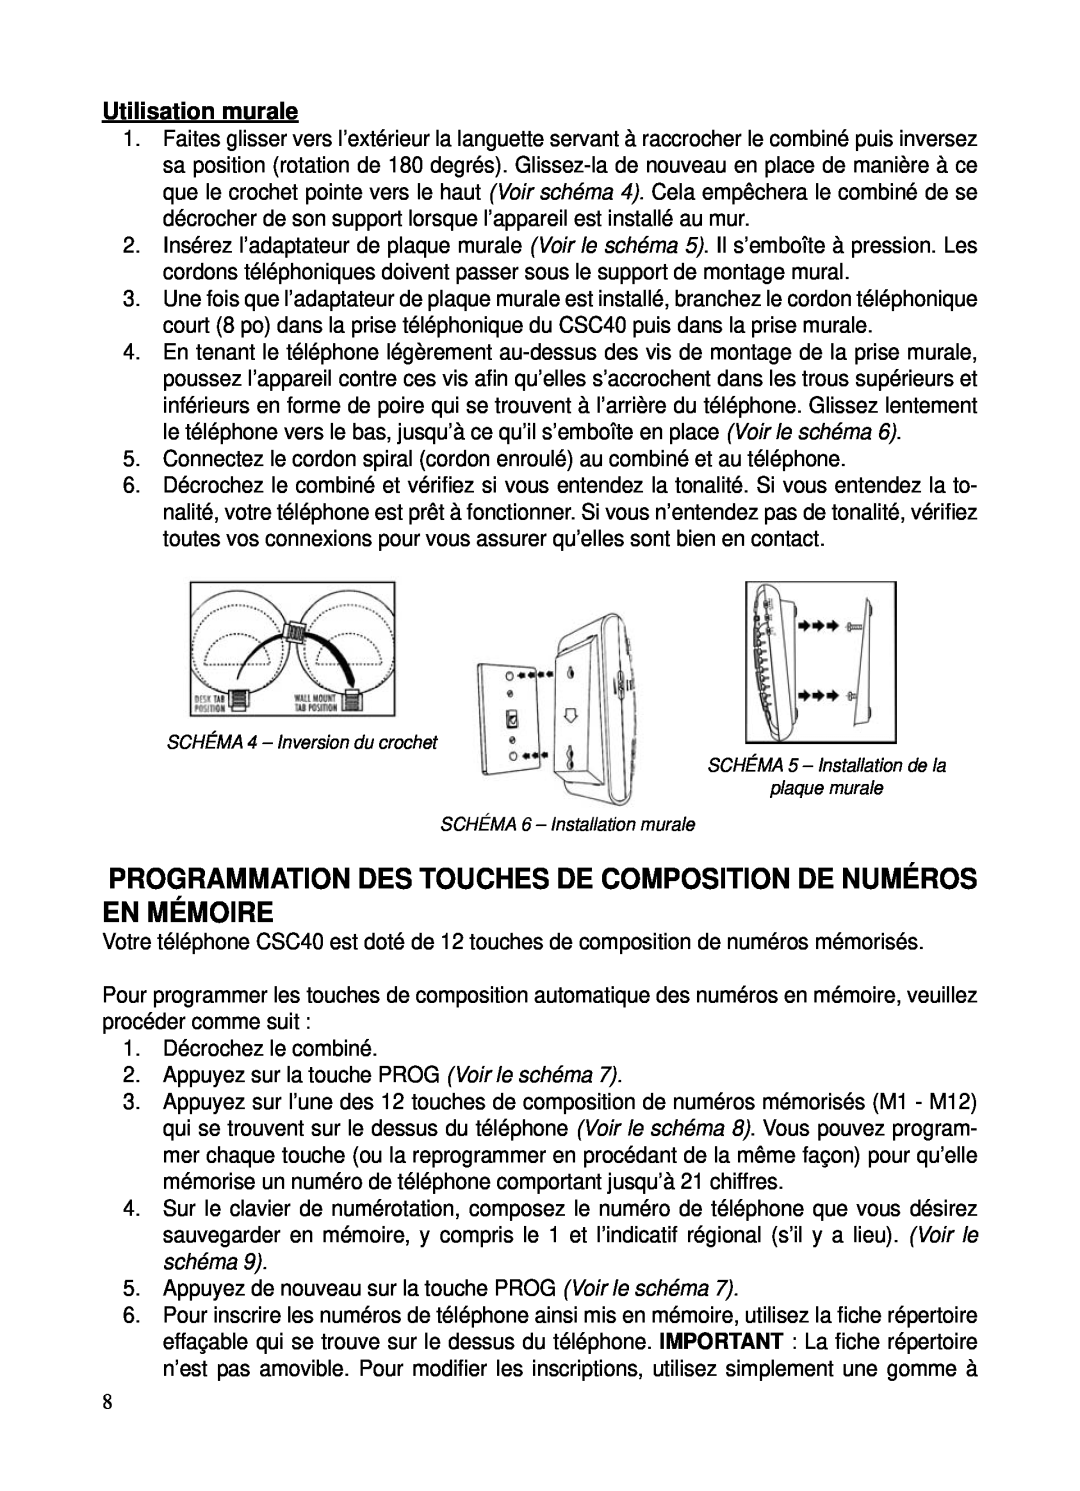 ClearSounds CSC40 user manual Programmation Des Touches De Composition De Numéros En Mémoire, Utilisation murale 